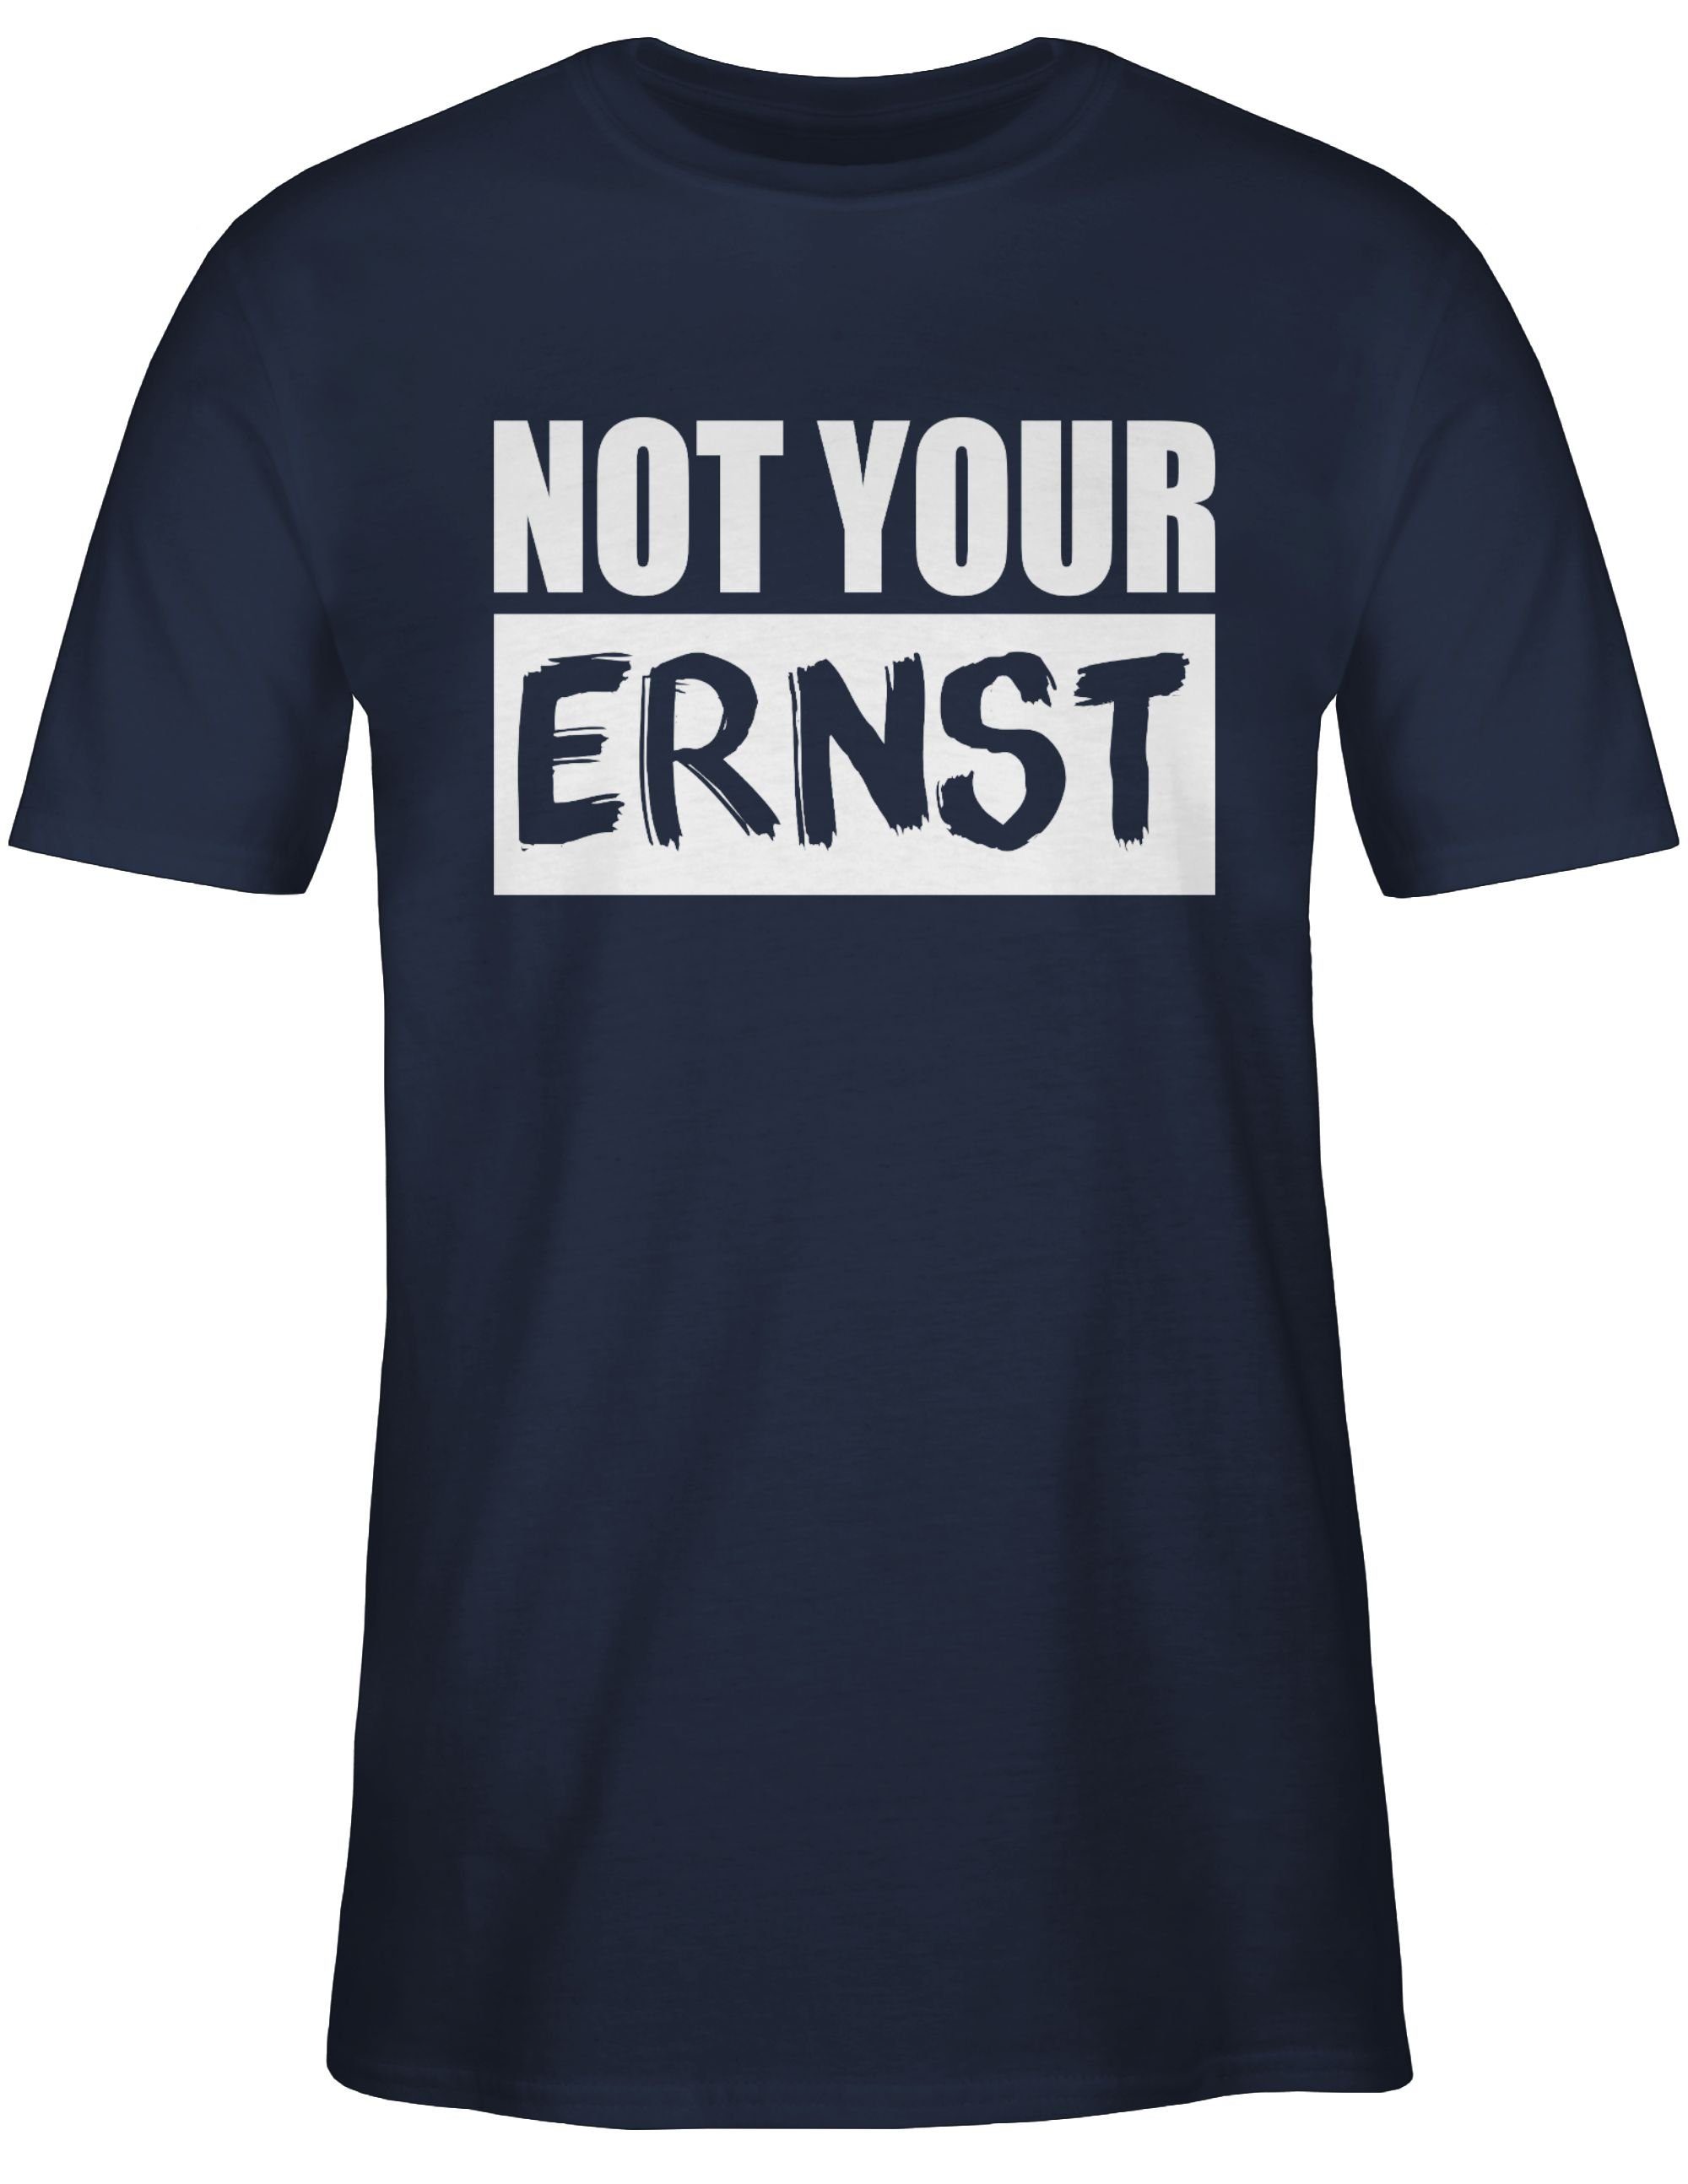 Statement ERNST? Sprüche weiß T-Shirt Blau 02 Not your Shirtracer Navy -